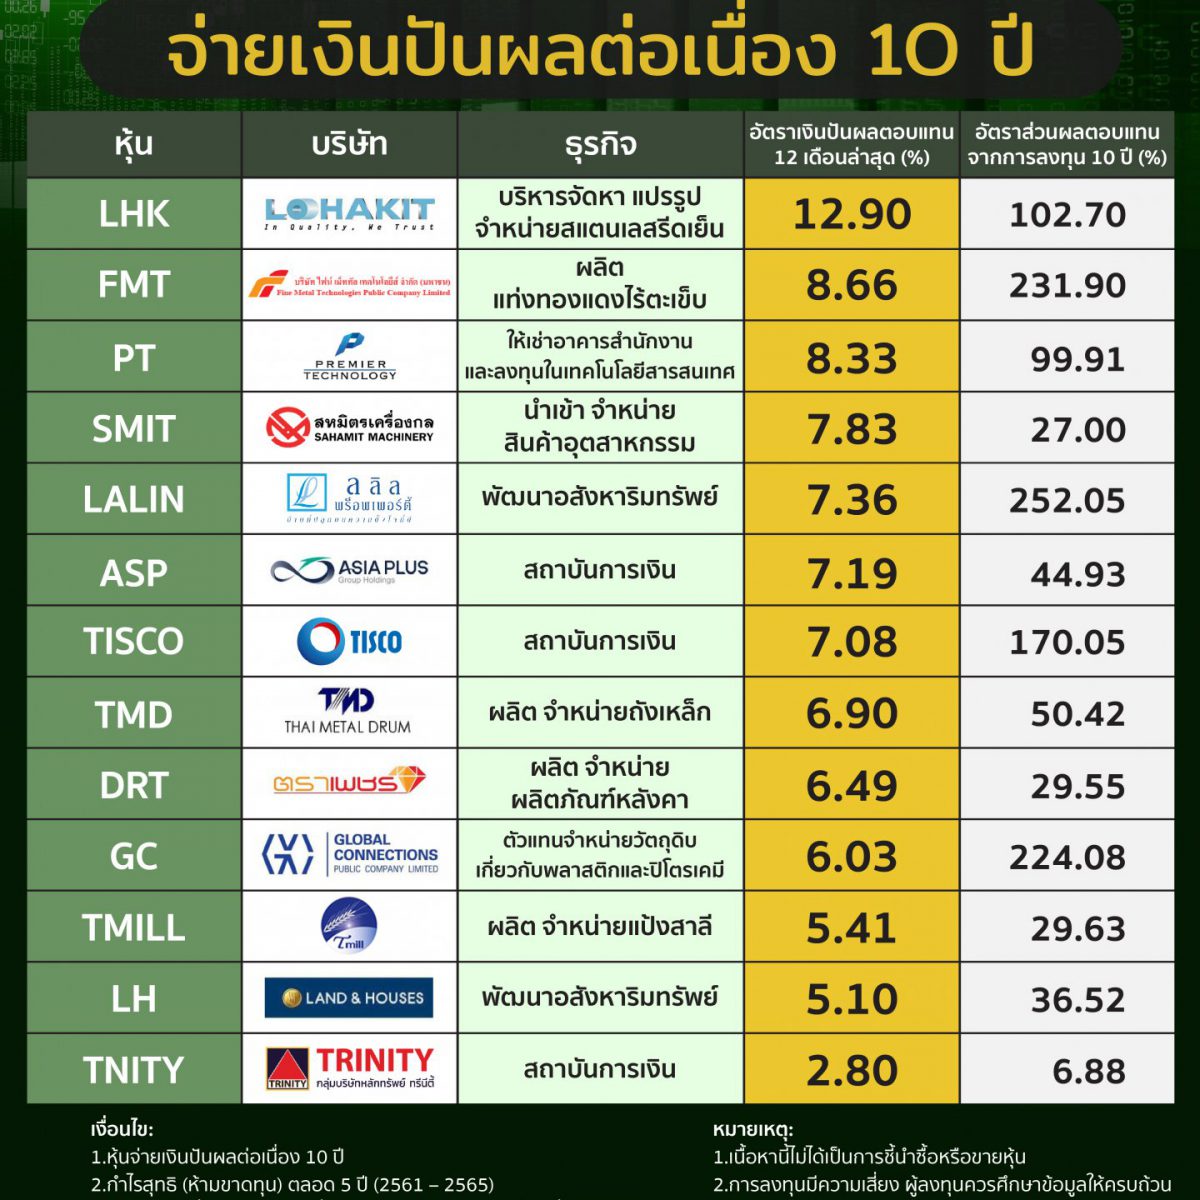 13 หุ้นไทย จ่ายเงินปันผลต่อเนื่อง 1O ปี - Wealth Me Up